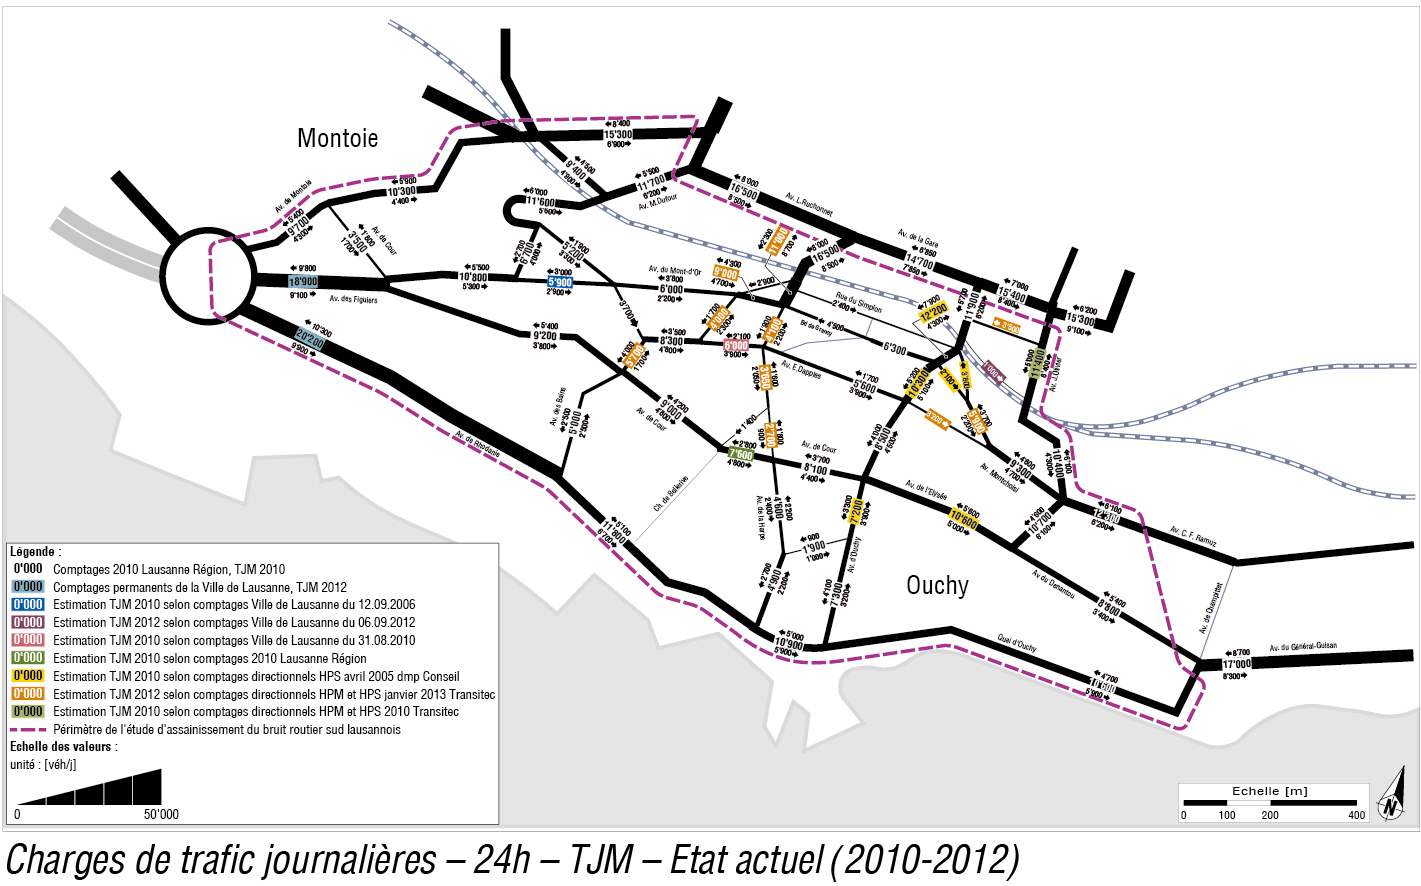 Assainissement du bruit routier – Sud lausannois : établissement du plan de charges TJM 2030